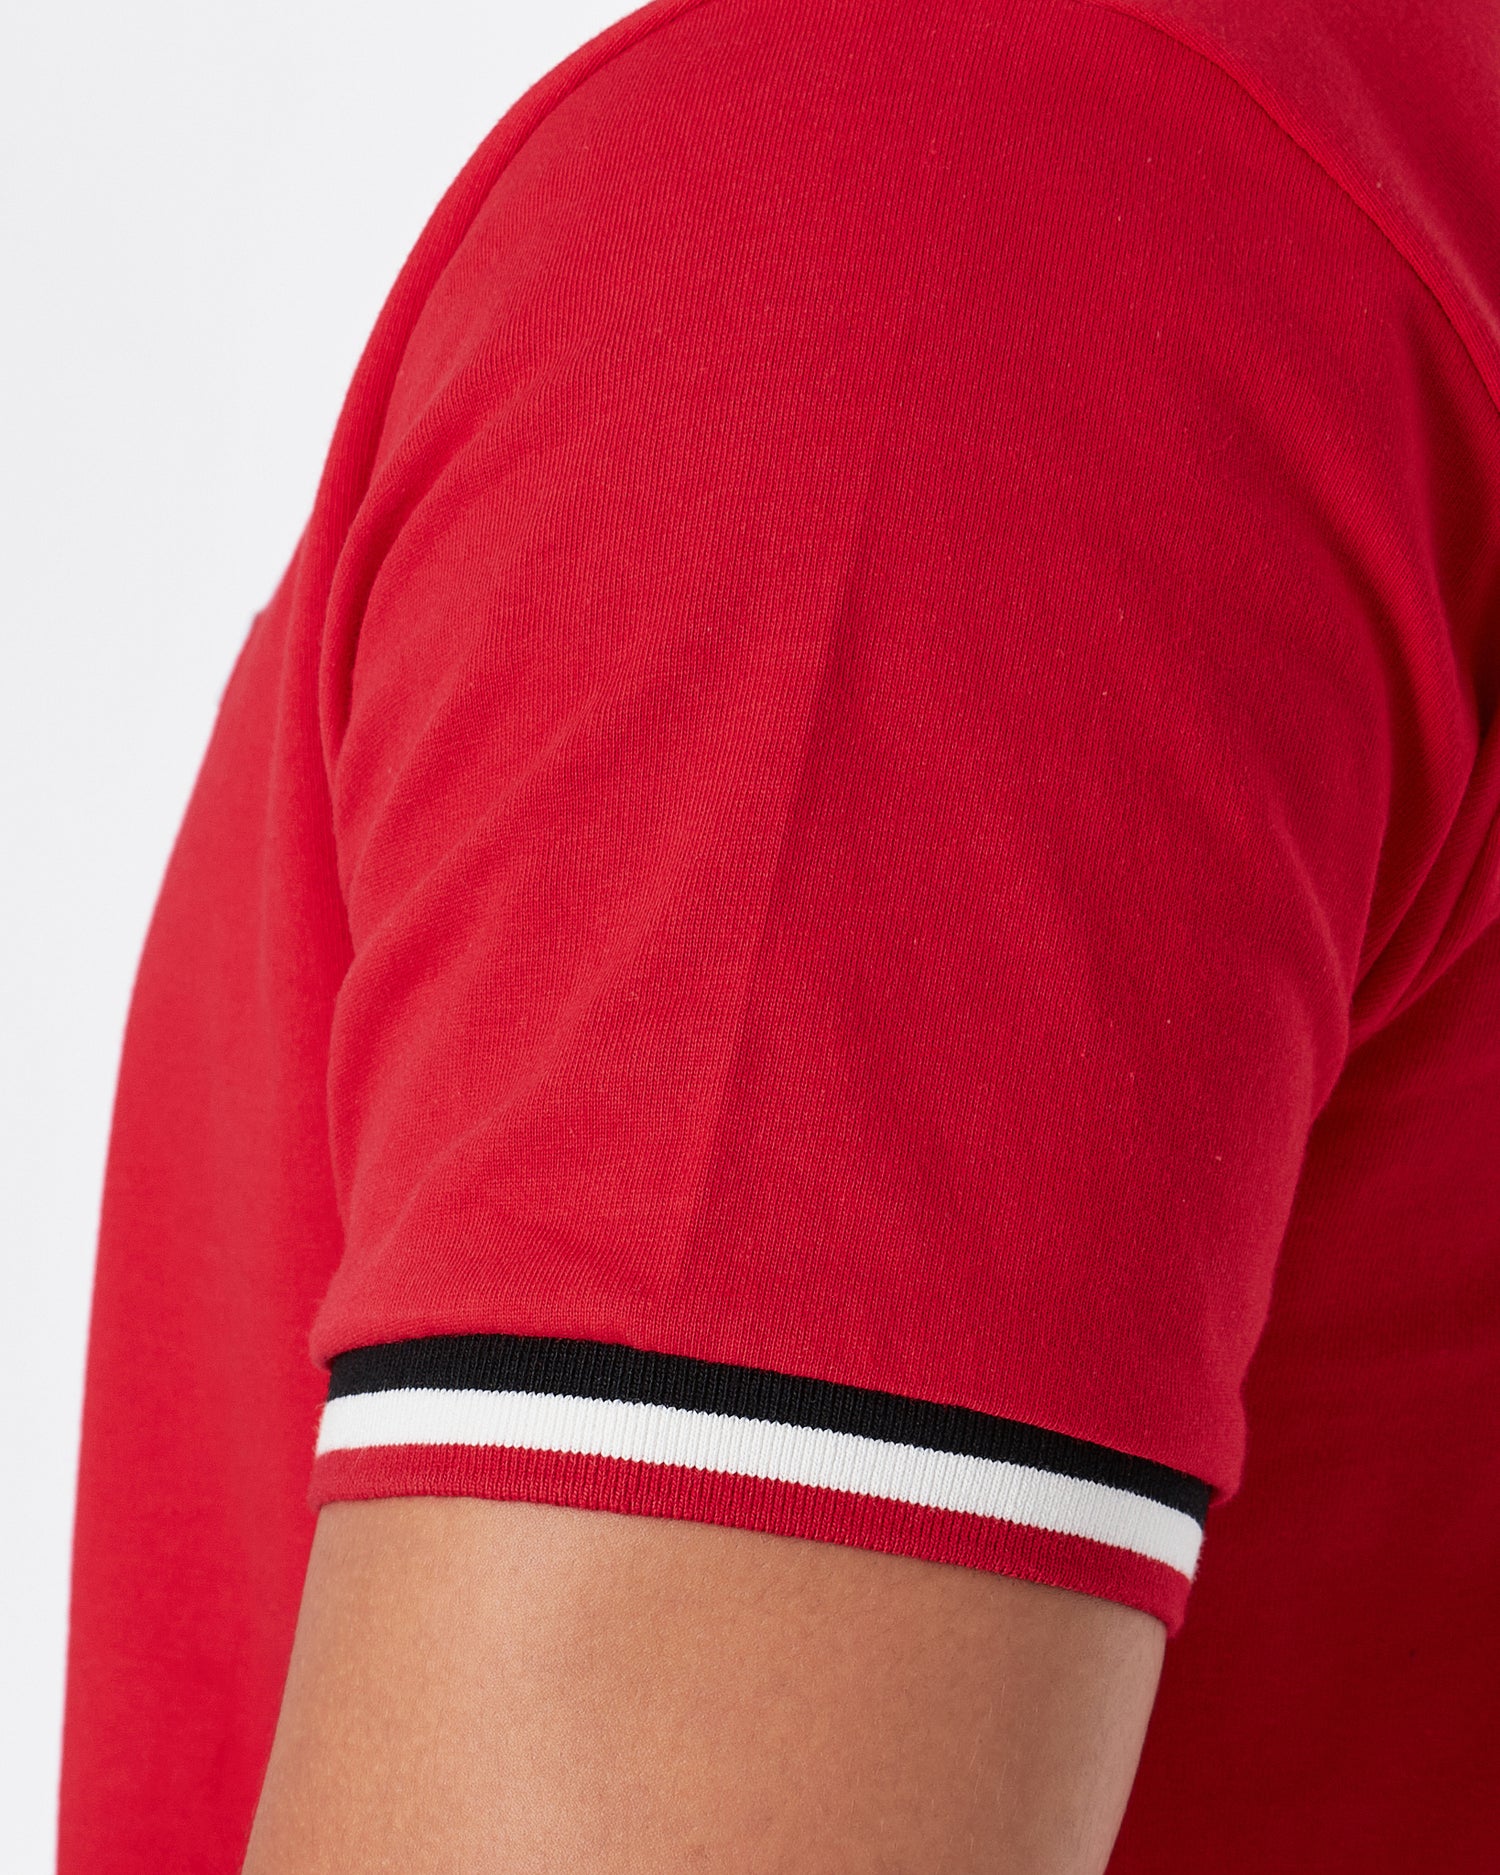 MON Stripe Collar Men Red T-Shirt 23.90